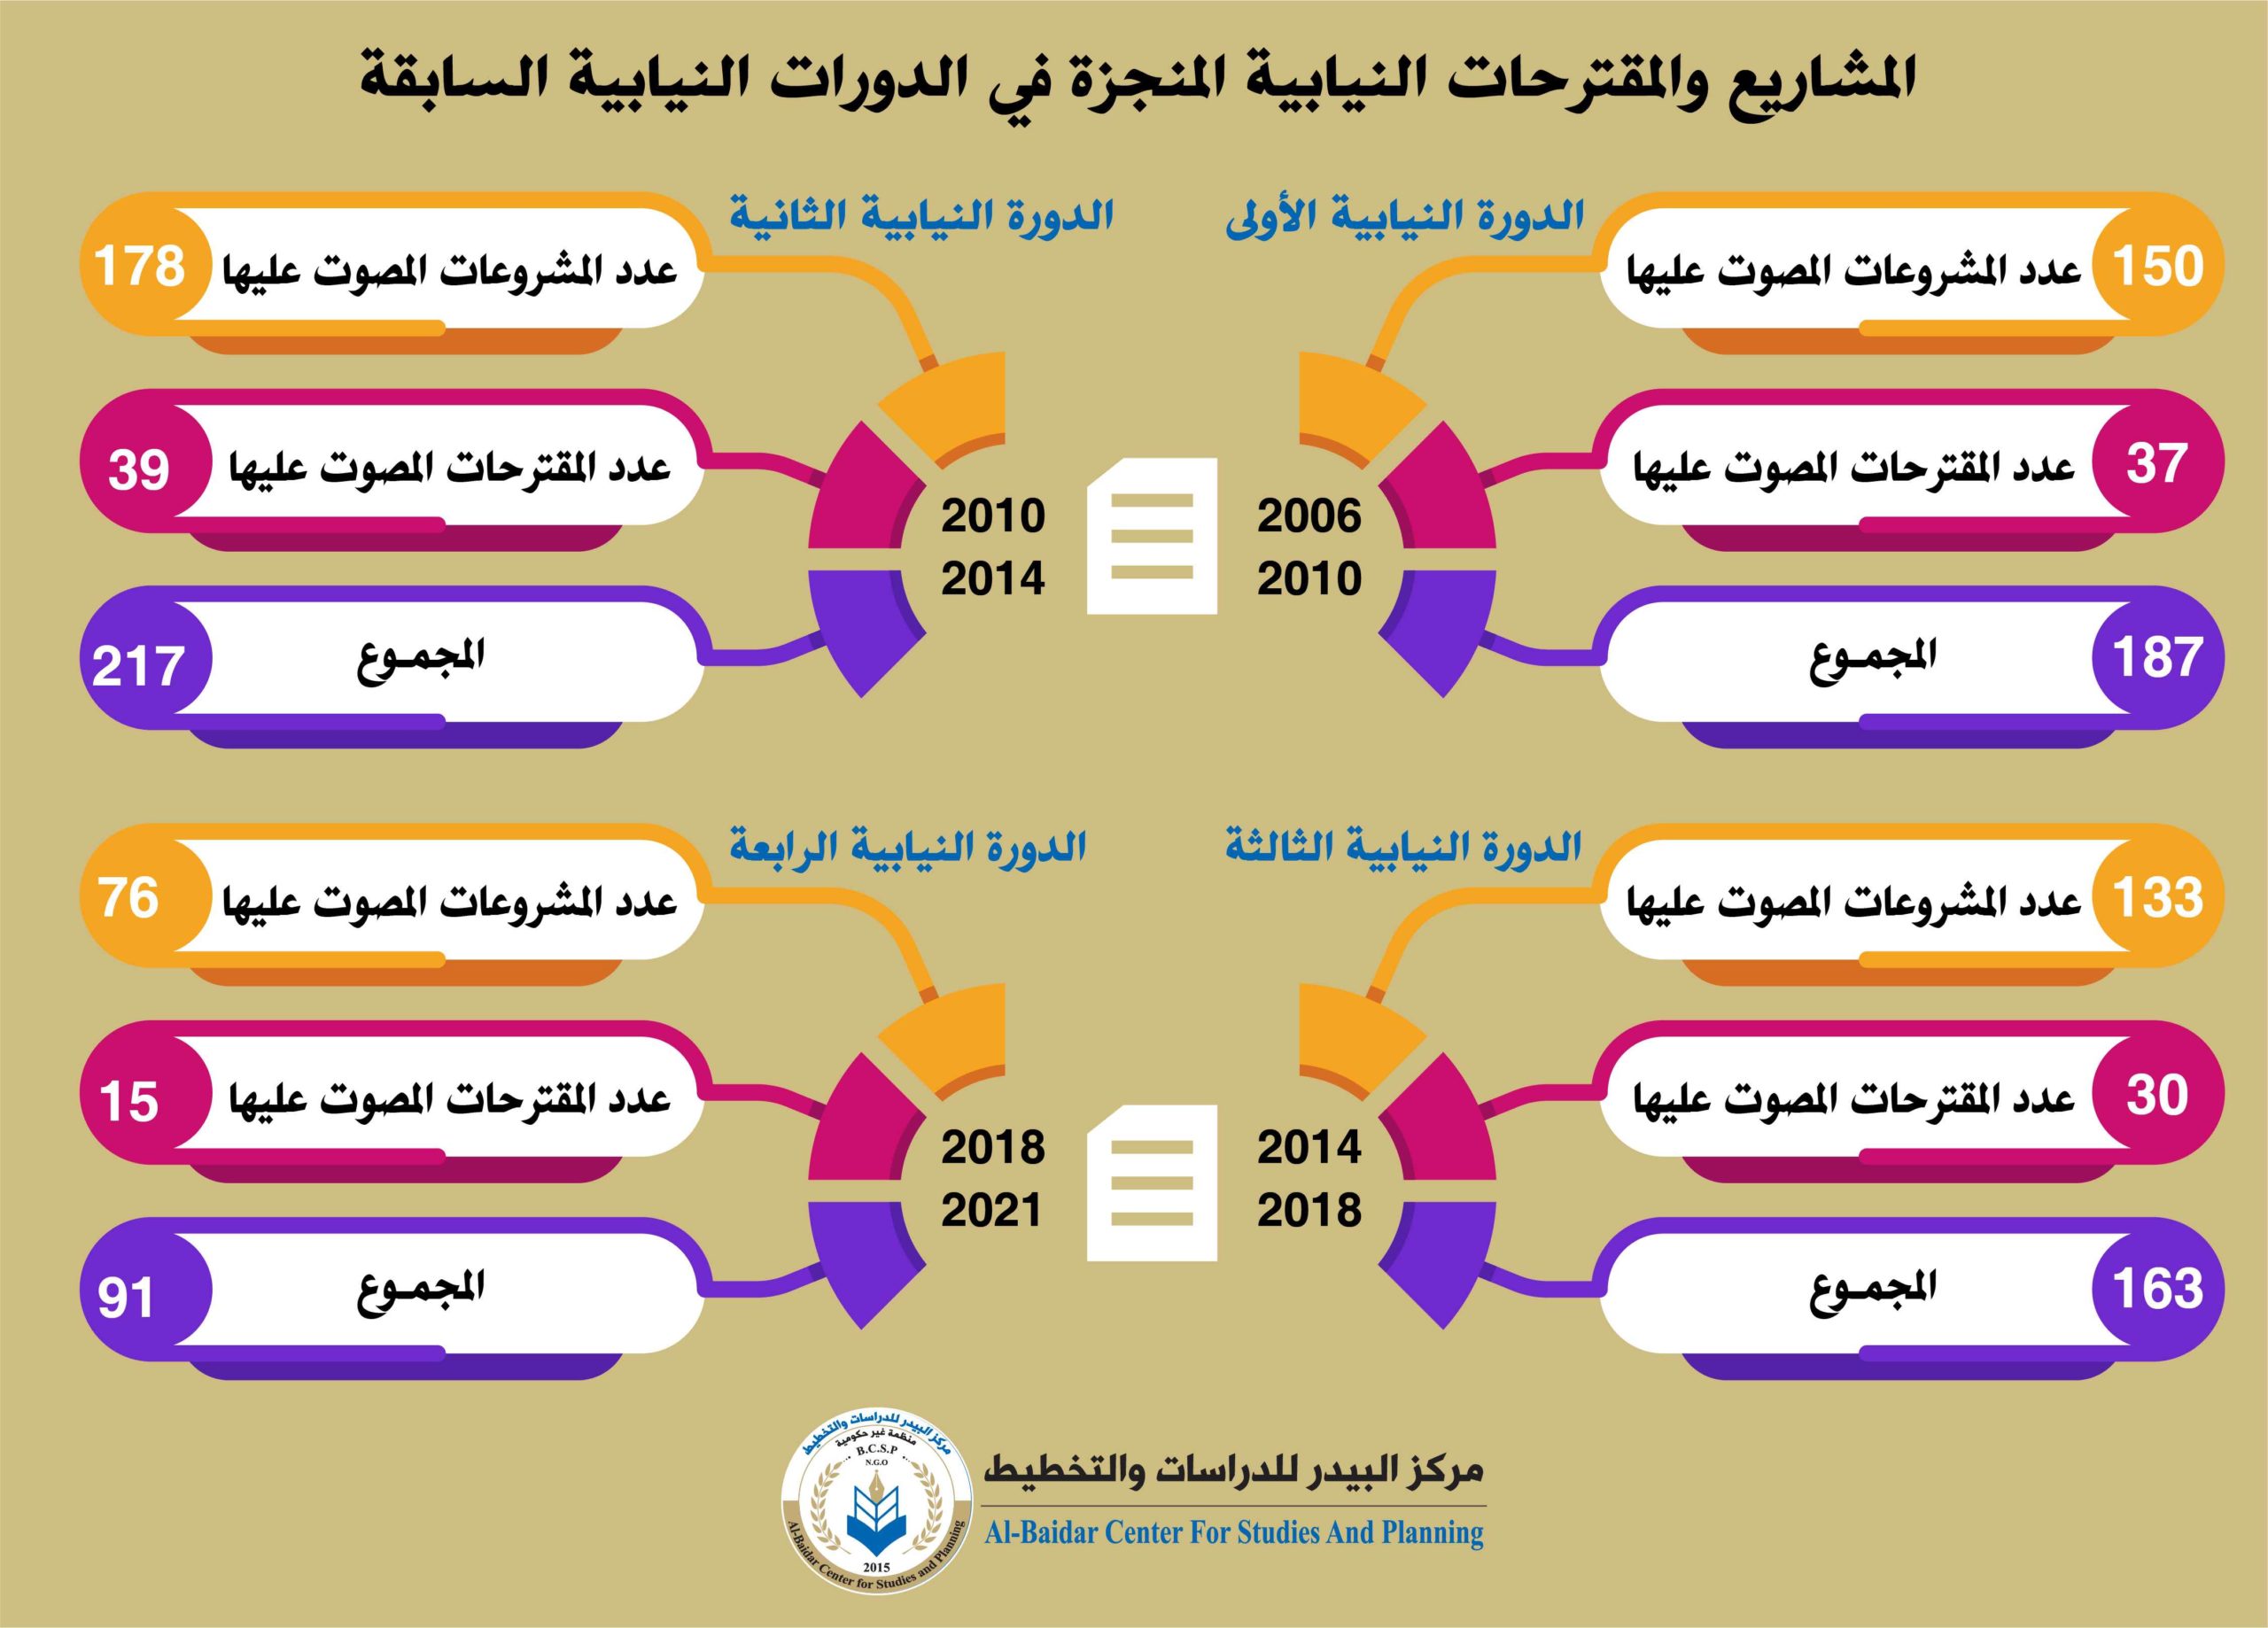 Photo of المشاريع والمقترحات المنجزة لمجلس النواب العراقي خلال الدورات النيابية السابقة